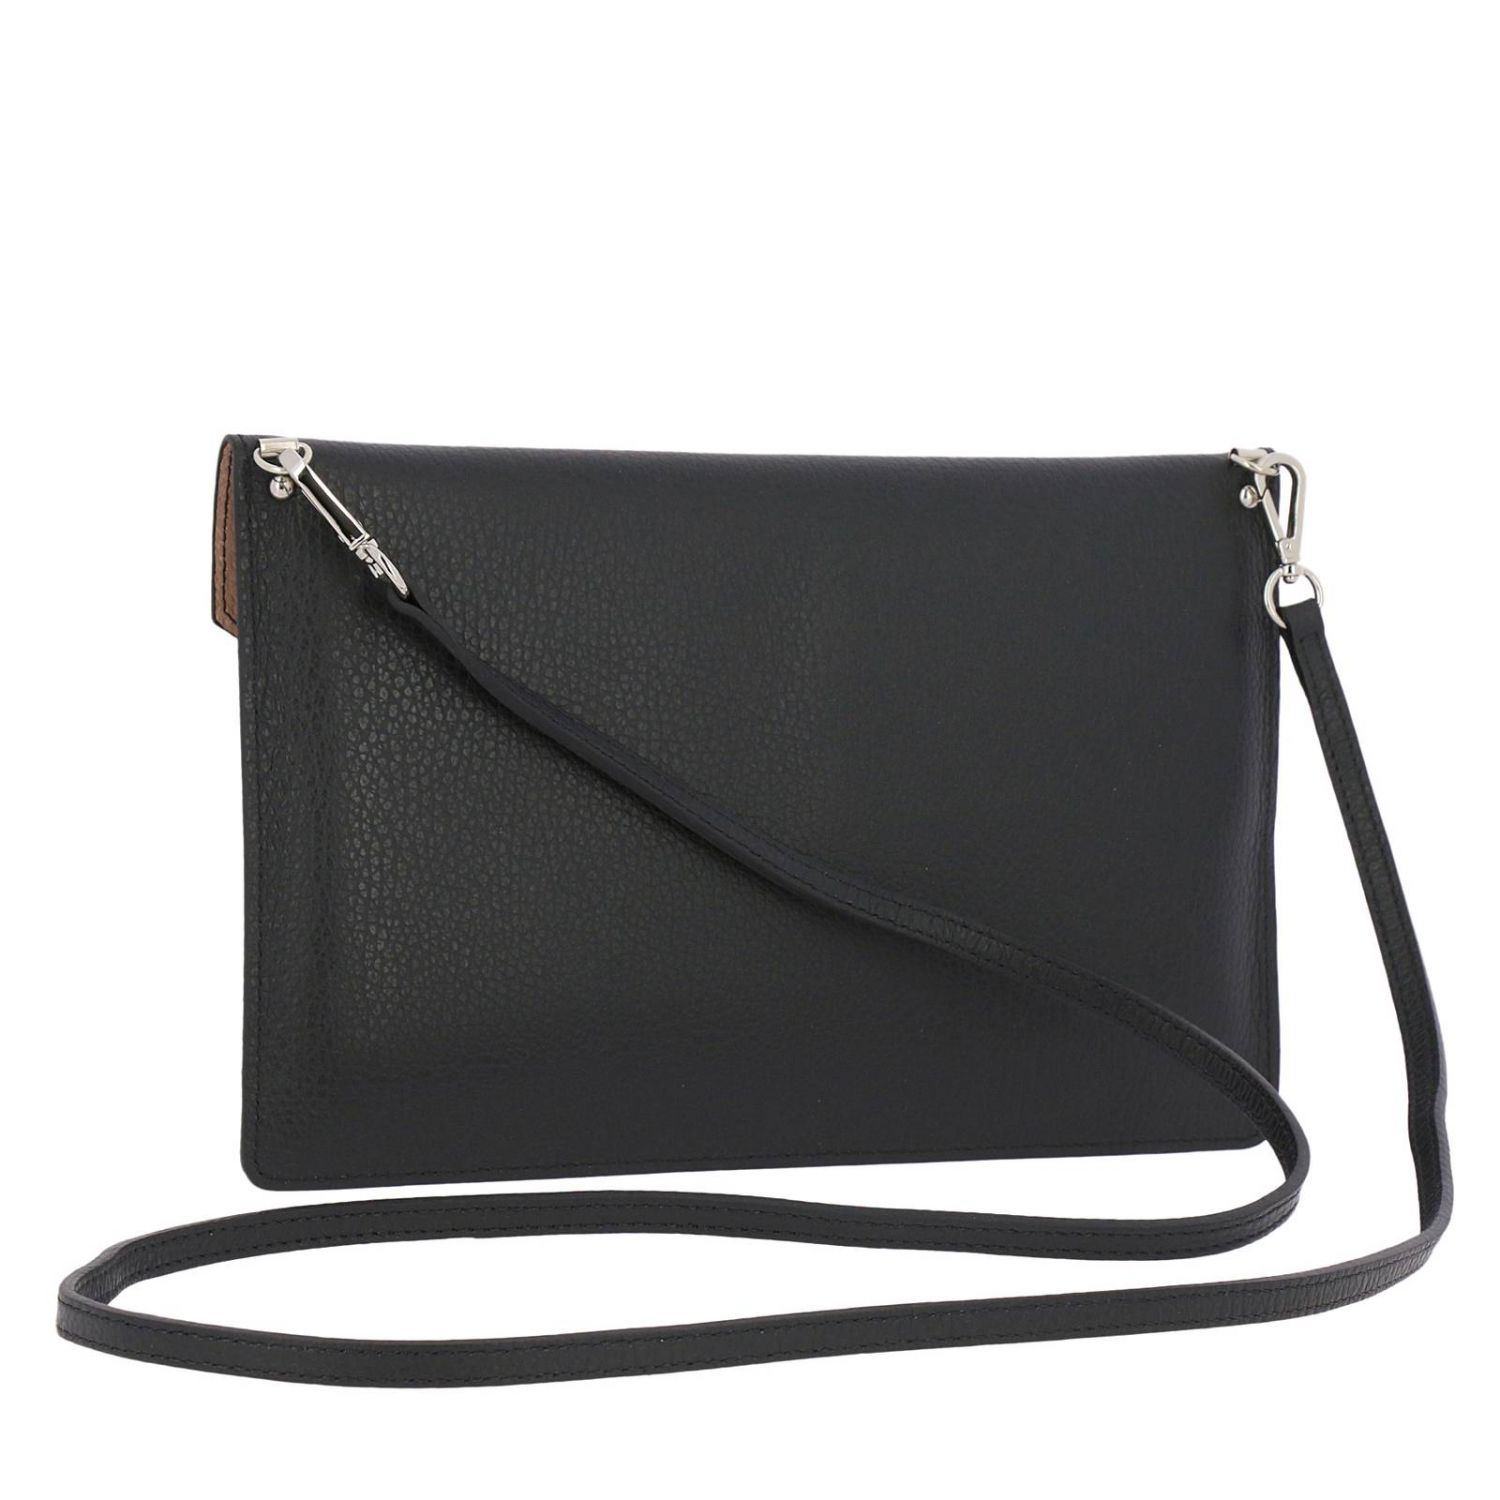 Lancaster Paris Outlet: Shoulder bag women - Black | Mini Bag Lancaster ...